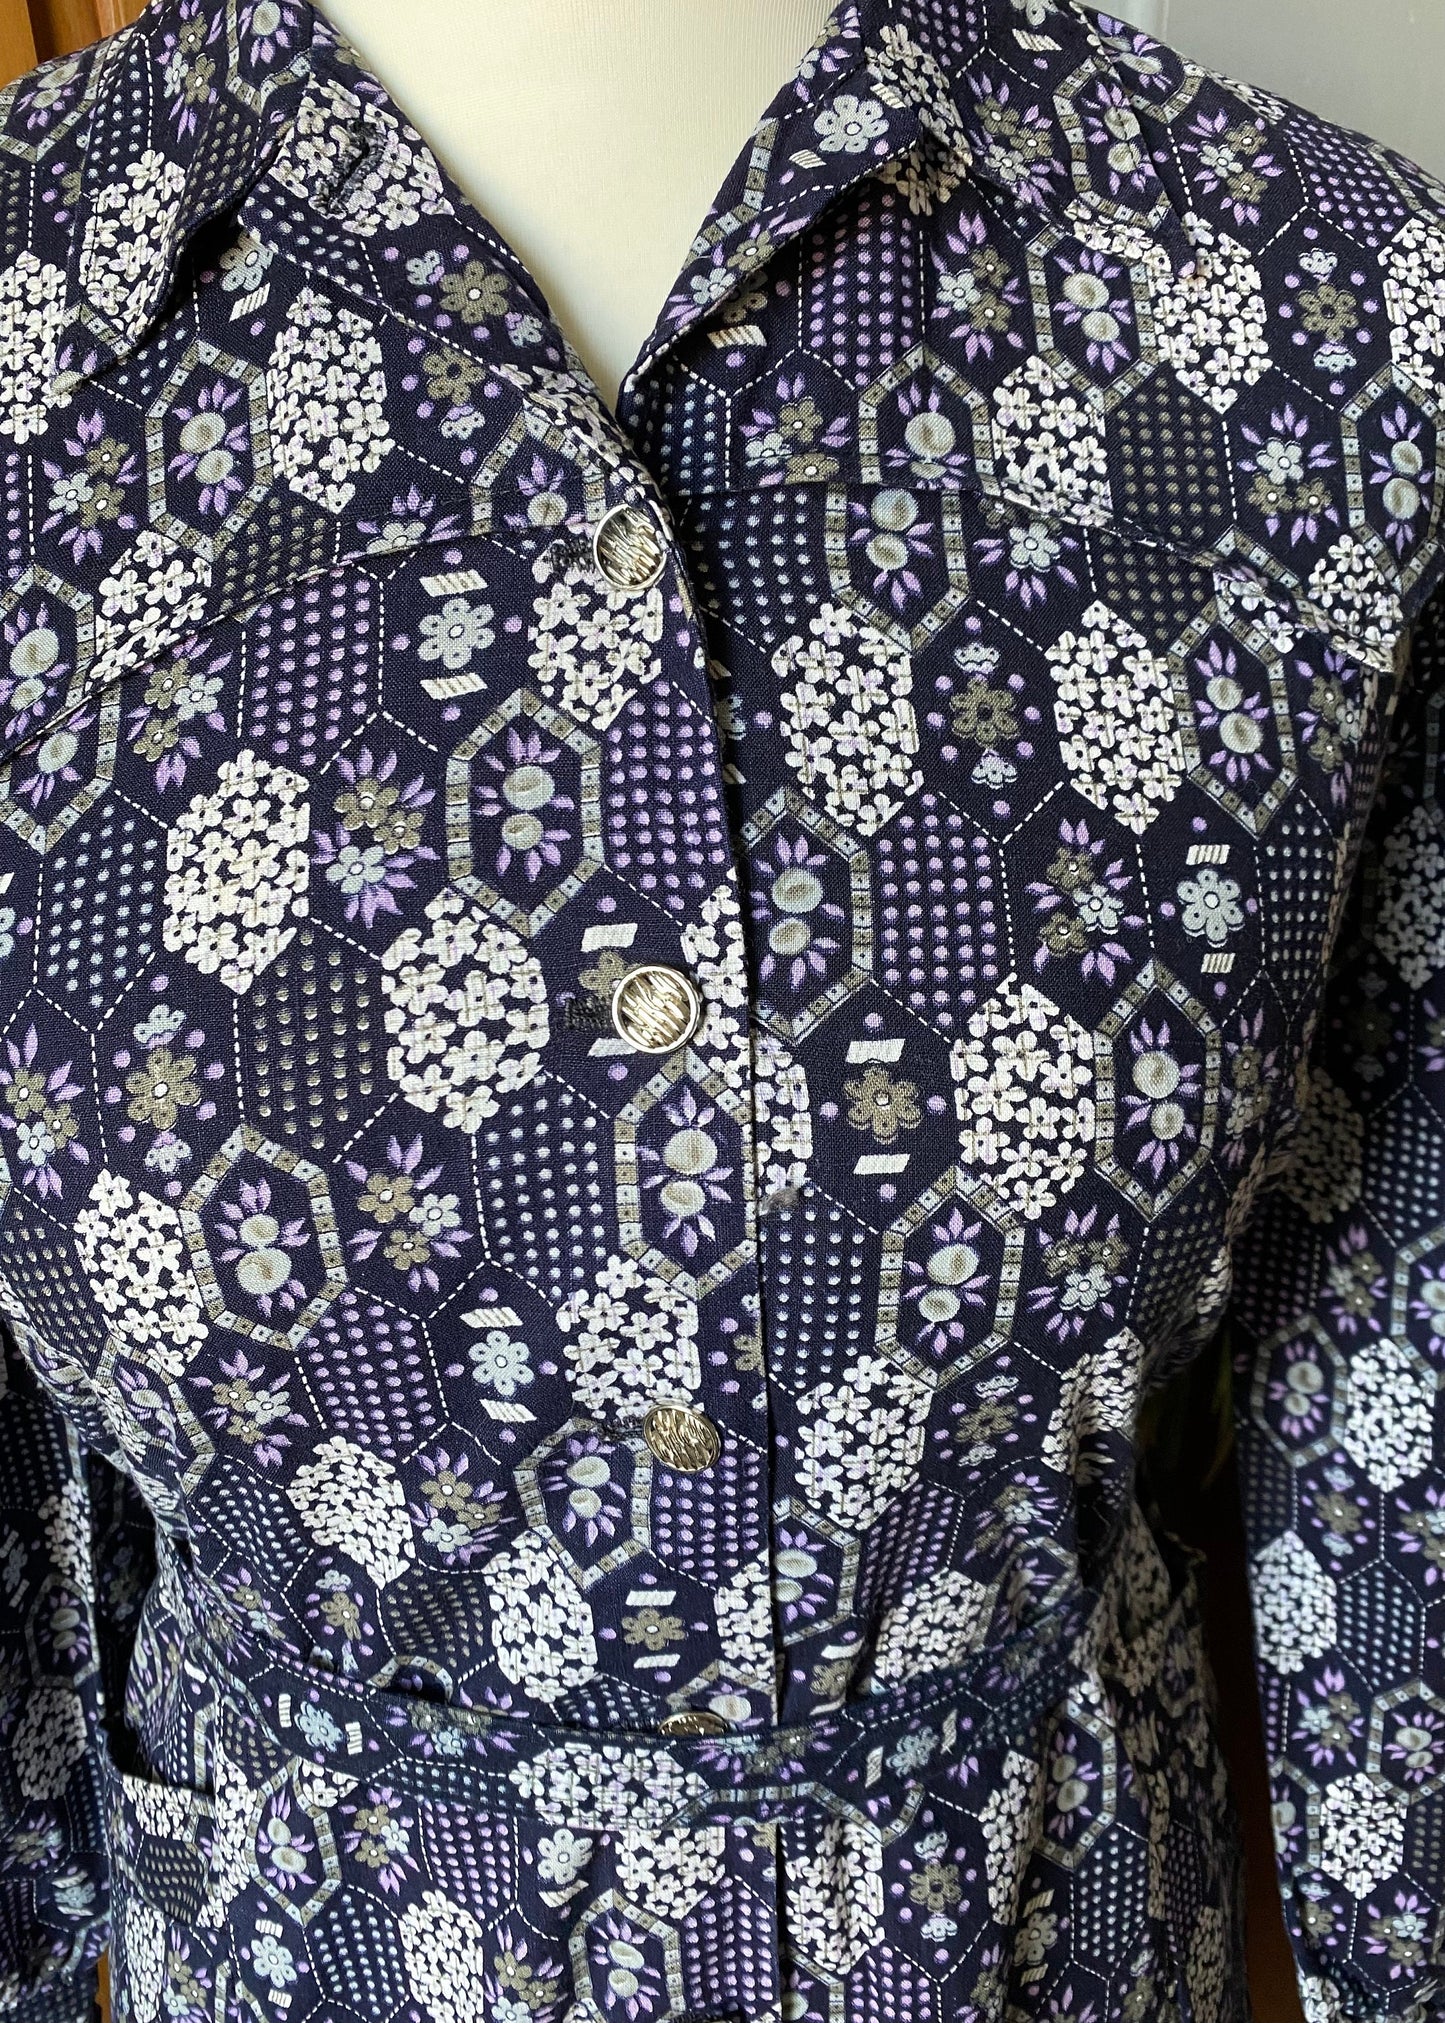 70s purple and white geometric print shirt dress with matching belt. Approx  U.K size 12-14